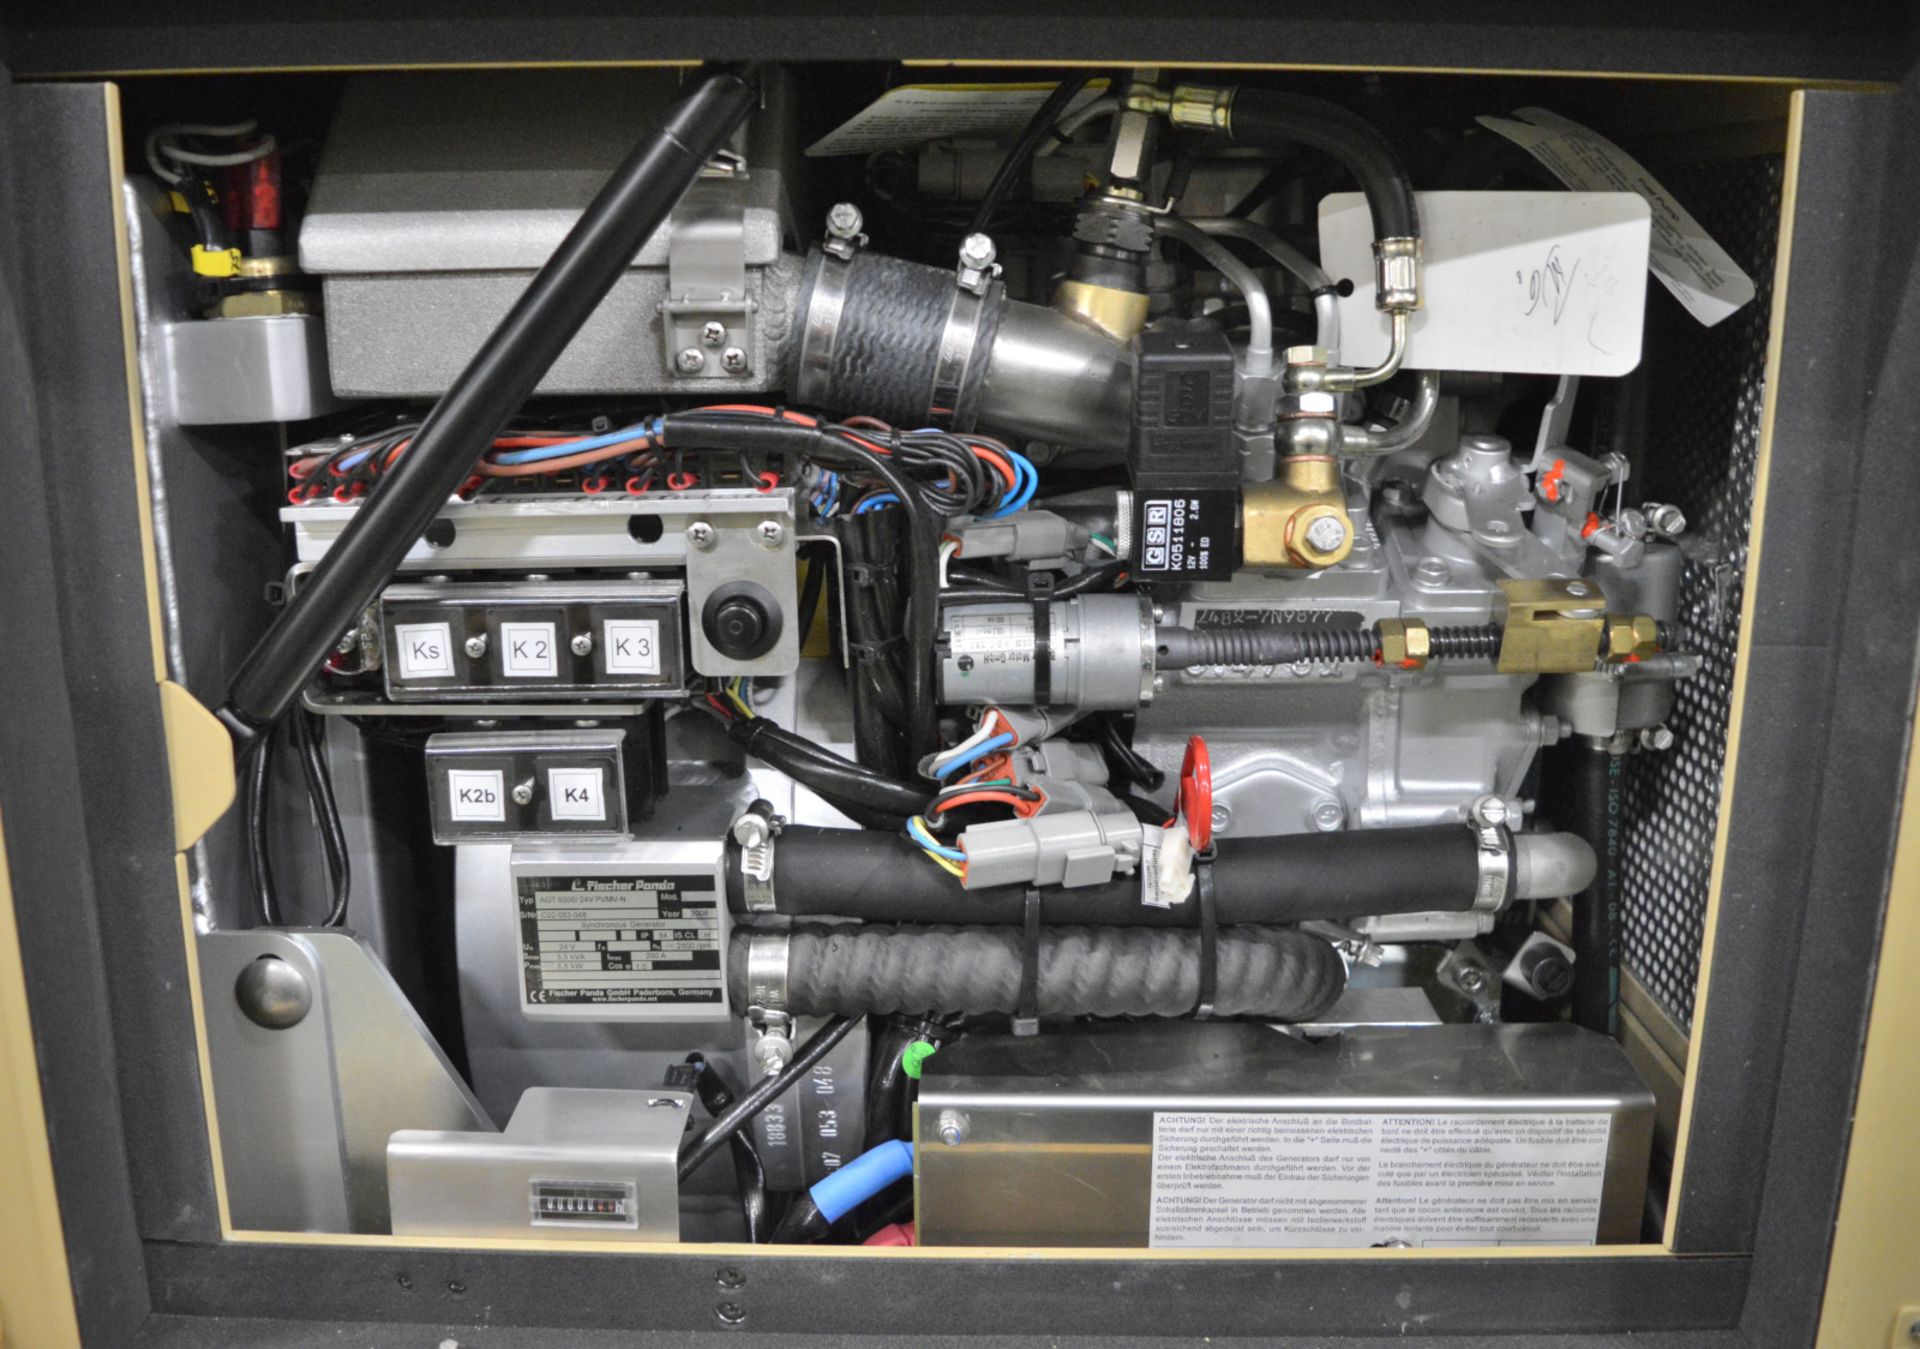 Fischer Panda Fully Enclosed Diesel Generator - Type AGT 6000/24V PVMV-N - 24V 5.5kVA. - Image 2 of 3